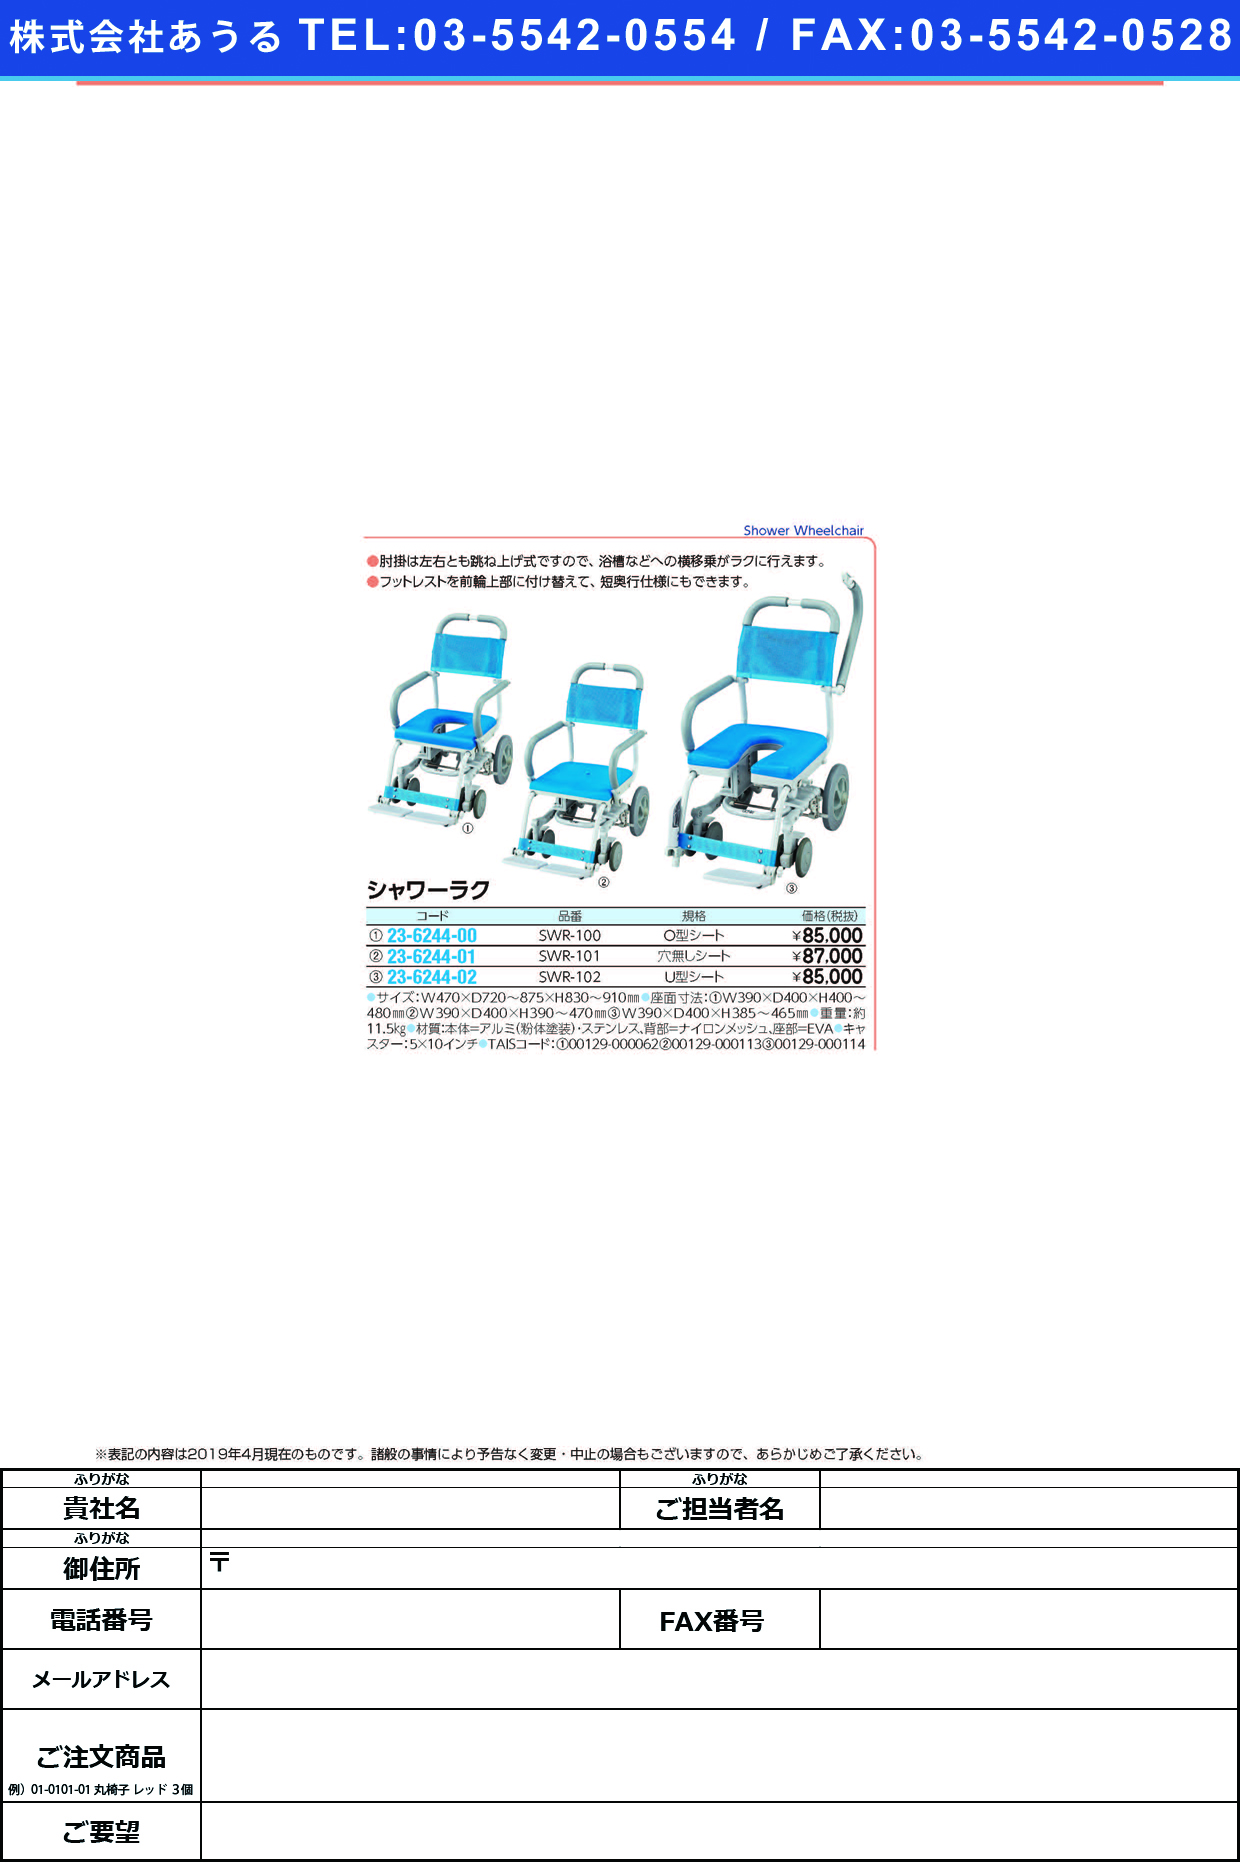 (23-6244-02)シャワーラク（Ｕ型シート） SWR-102 ｼｬﾜｰﾗｸ(Uｶﾞﾀｼｰﾄ)【1台単位】【2019年カタログ商品】